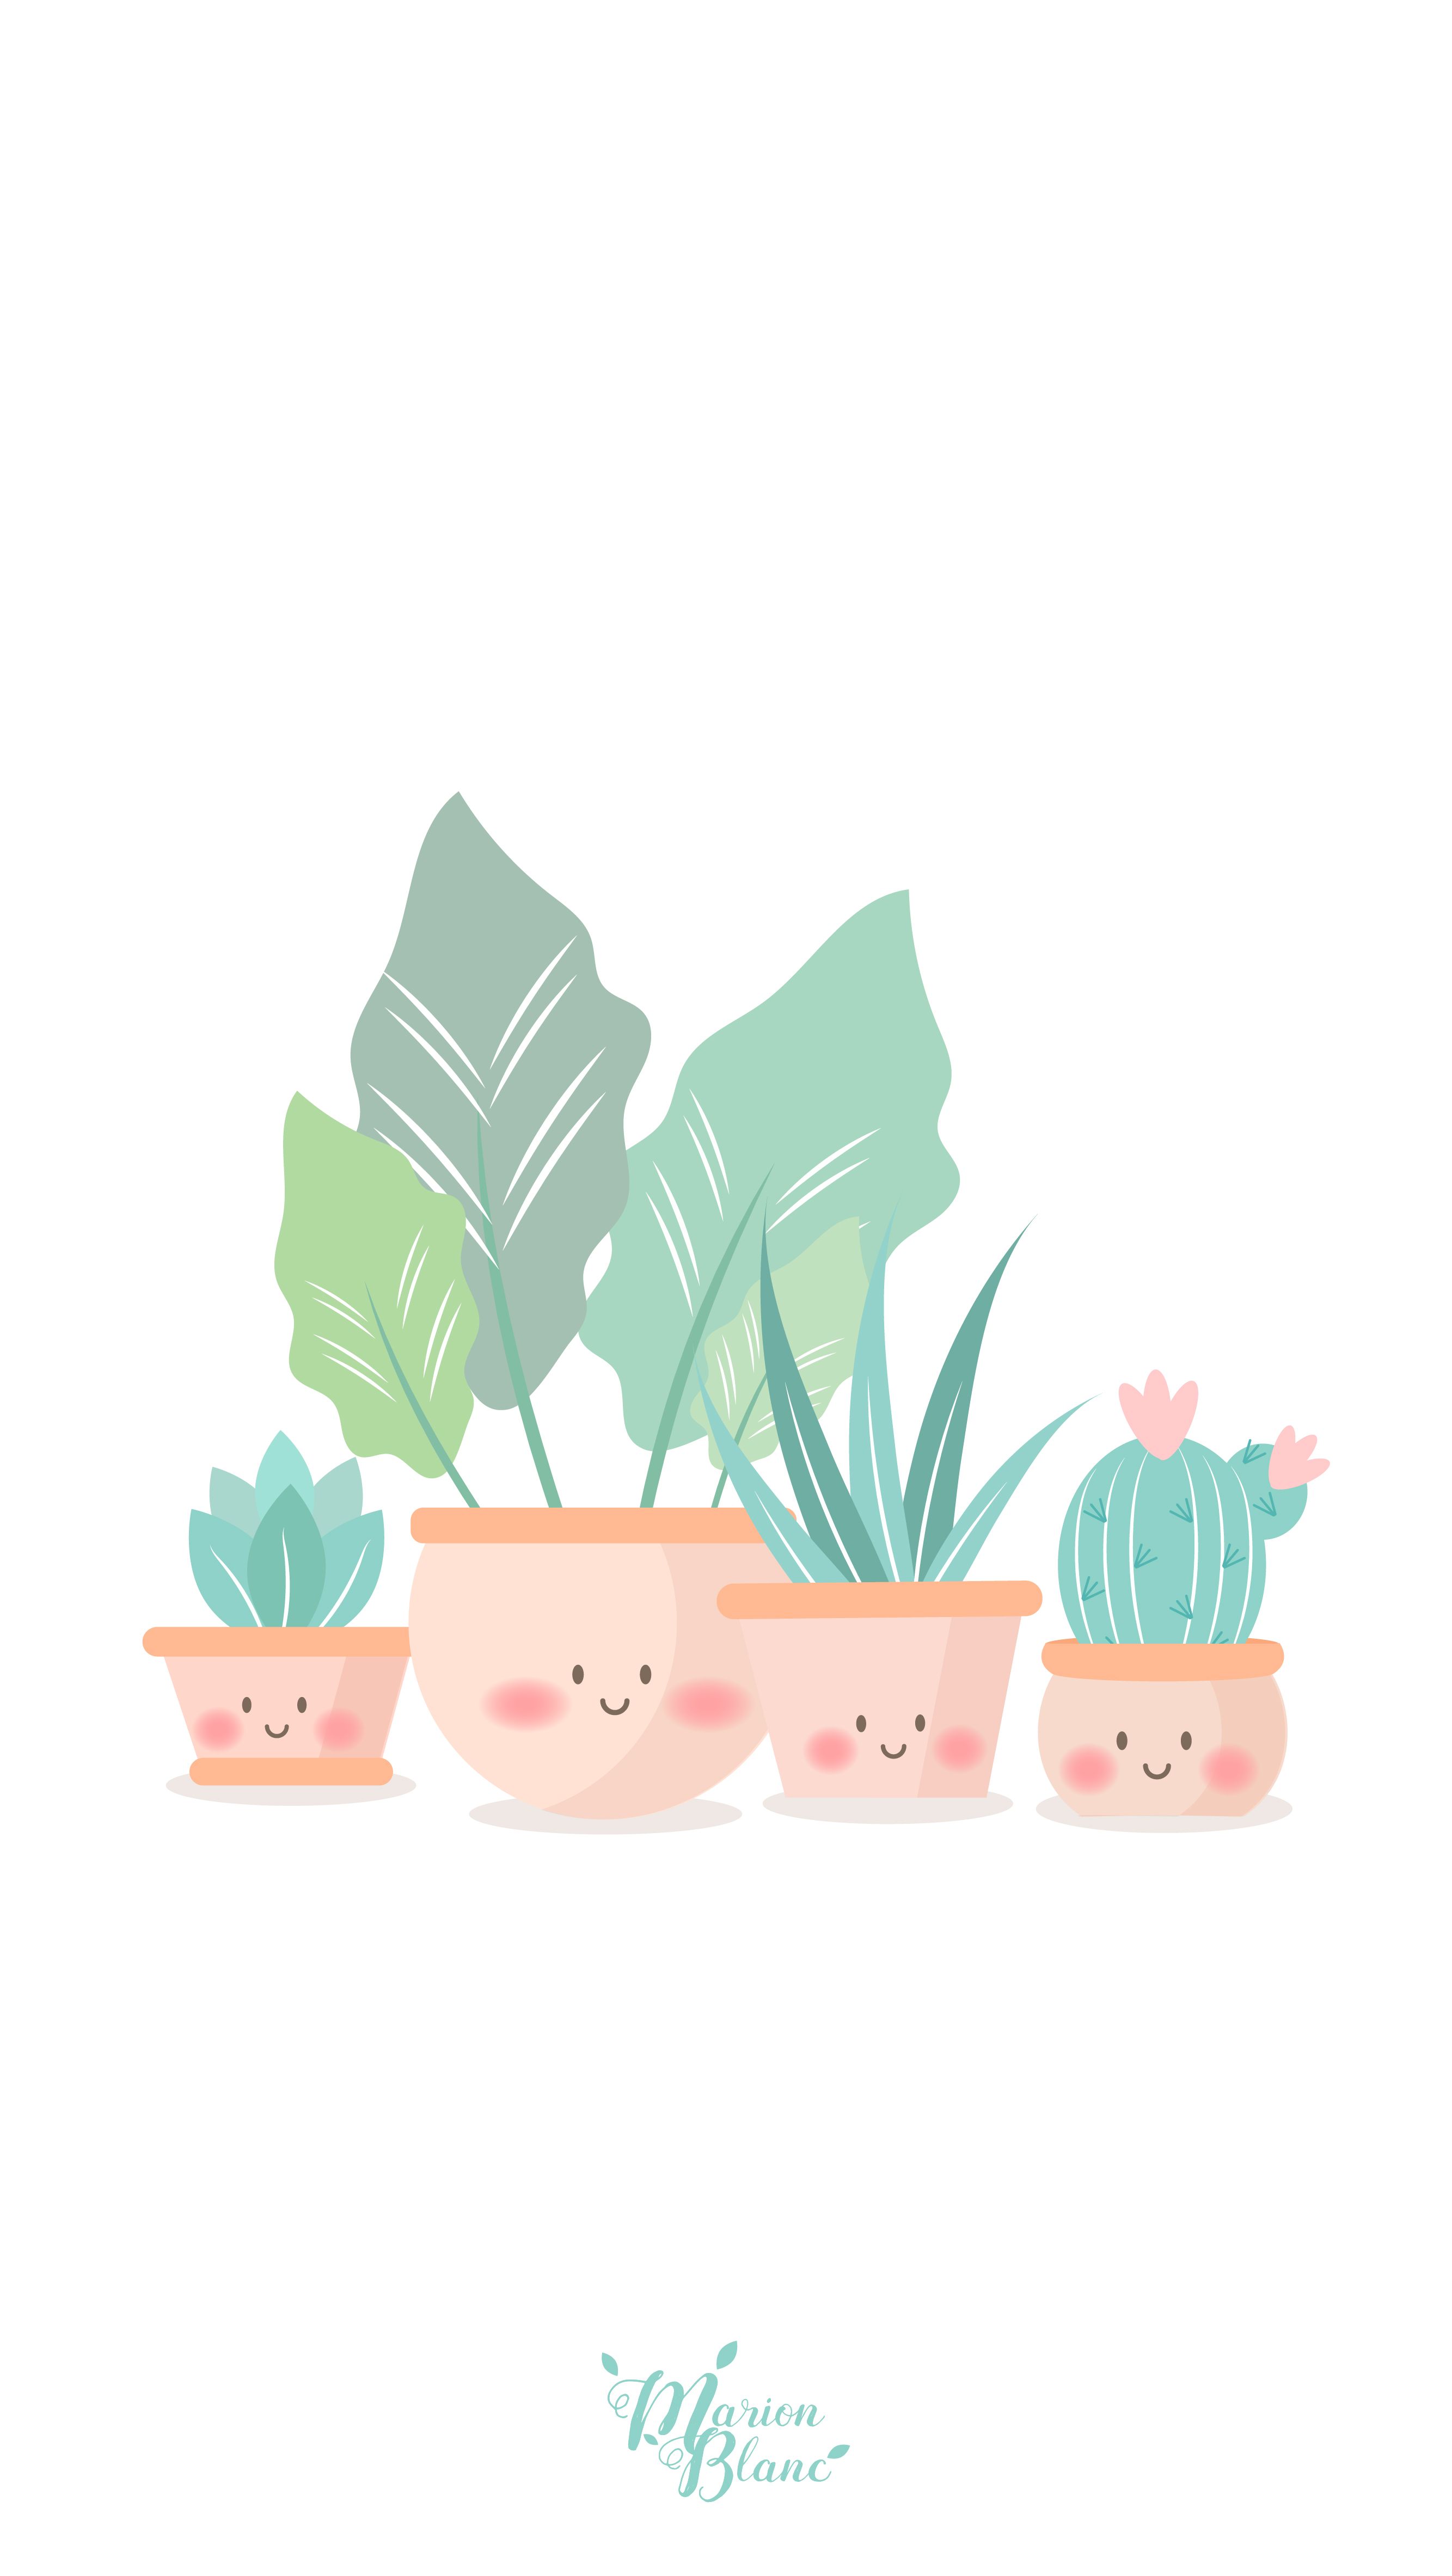 Plants Blanc. Dibujos bonitos, Ilustraciones, Fondos de cactus